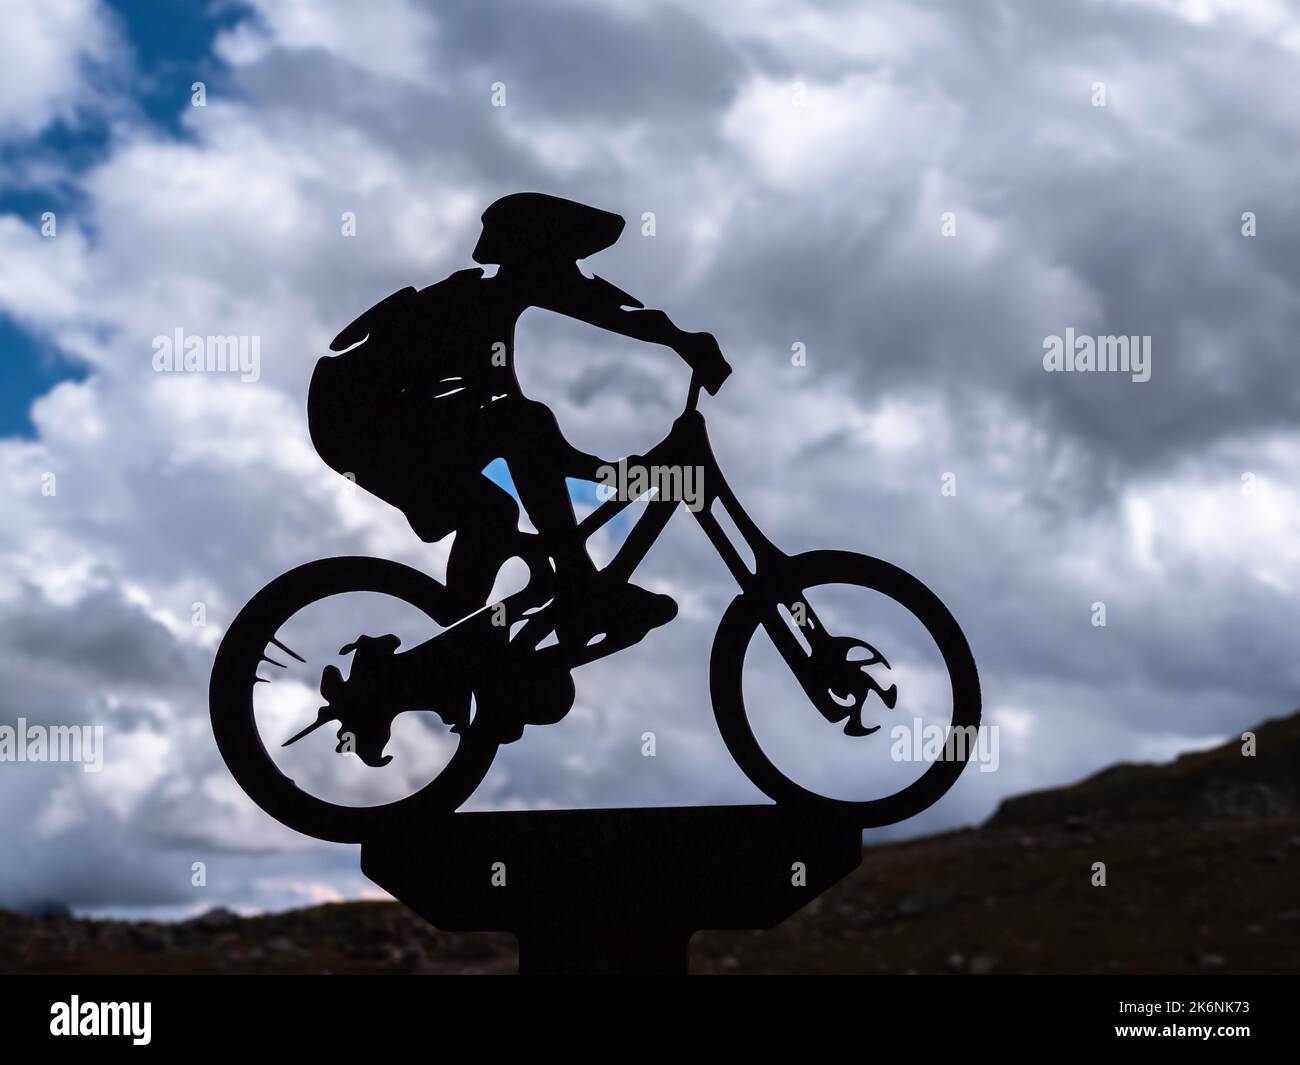 Timmelsjoch, Autriche - 26 juillet 2022 : silhouette d'un cycliste sur le col de Timmelsjoch dans le Tyrol entre l'Autriche et l'Italie Banque D'Images